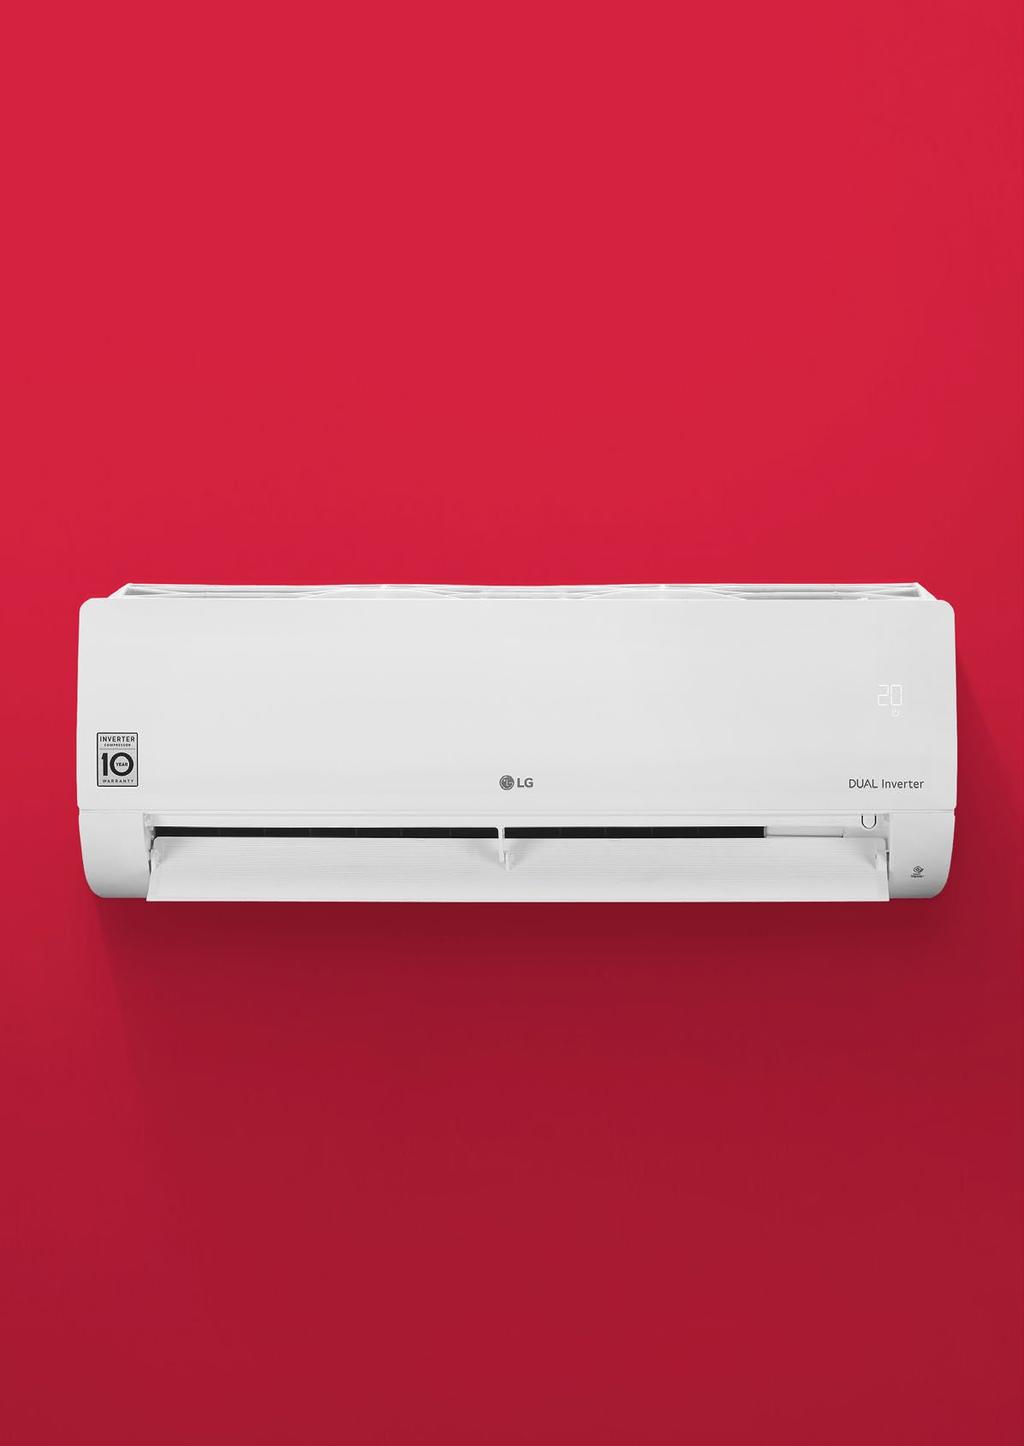 LG Najnowsze rozwiązania klimatyzacyjne opierające się na zaawansowanej technologii LG.